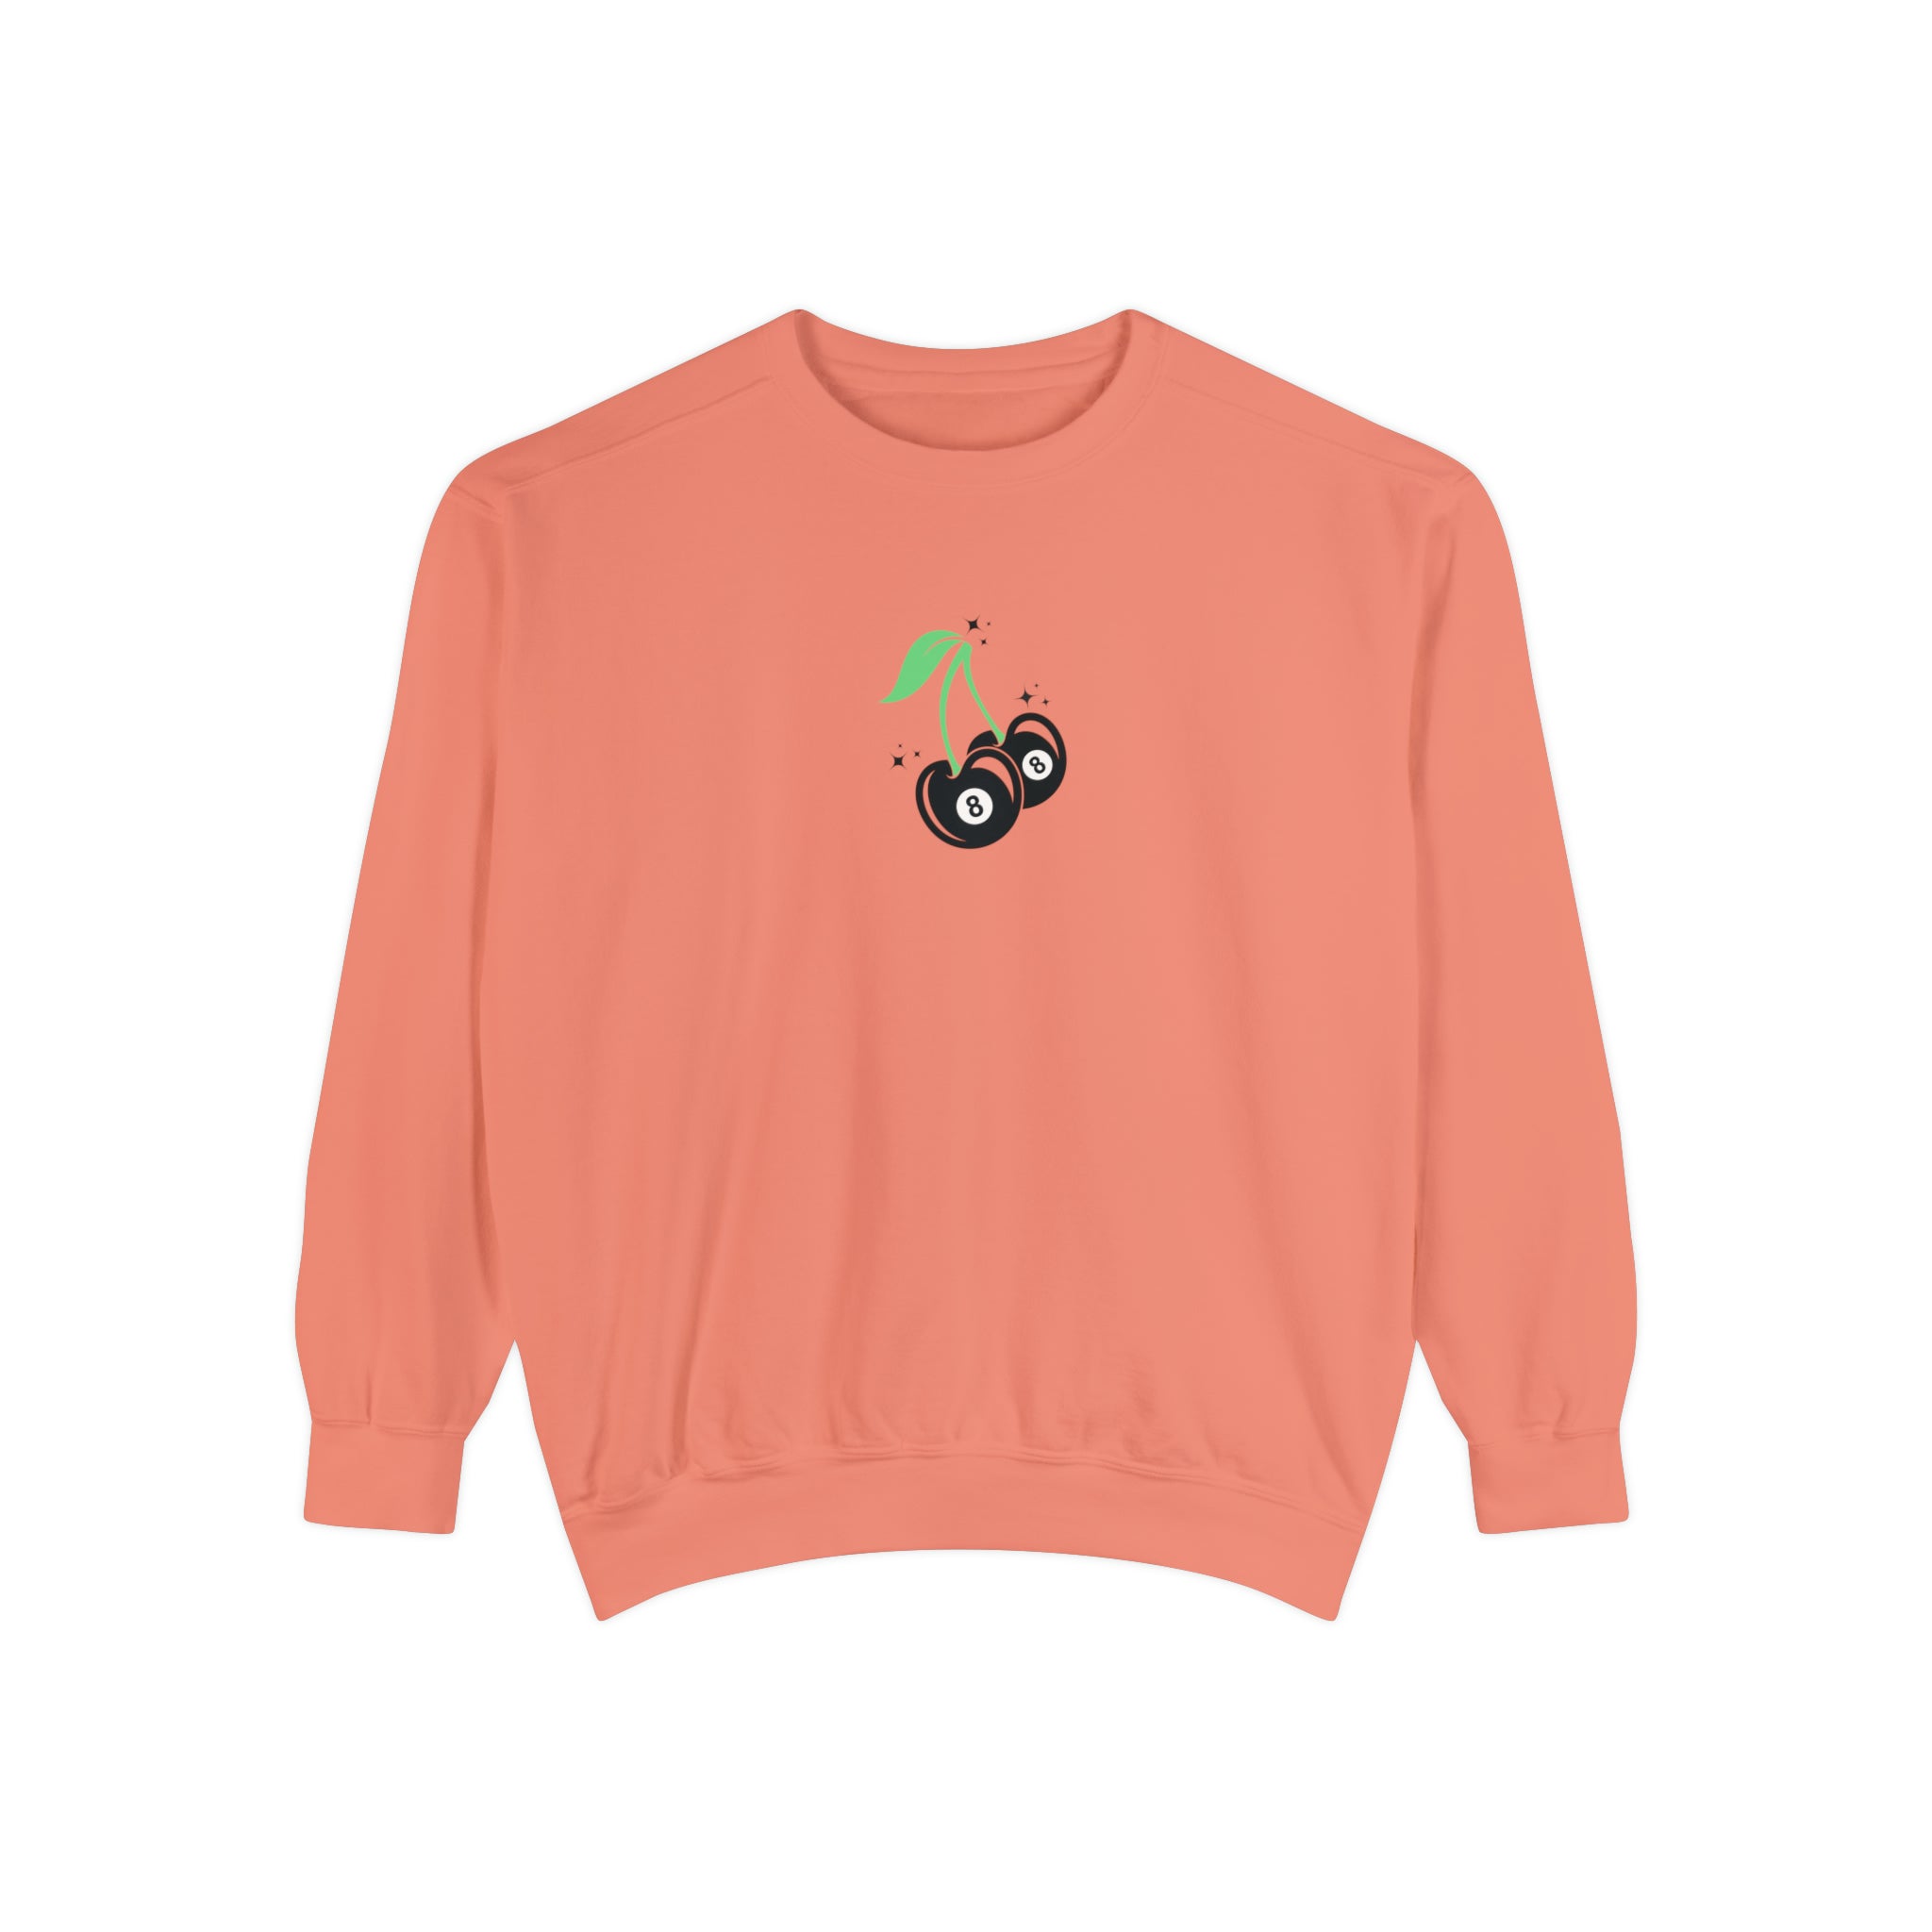 8 Ball Cherries Comfort Colors Crewneck Sweatshirt